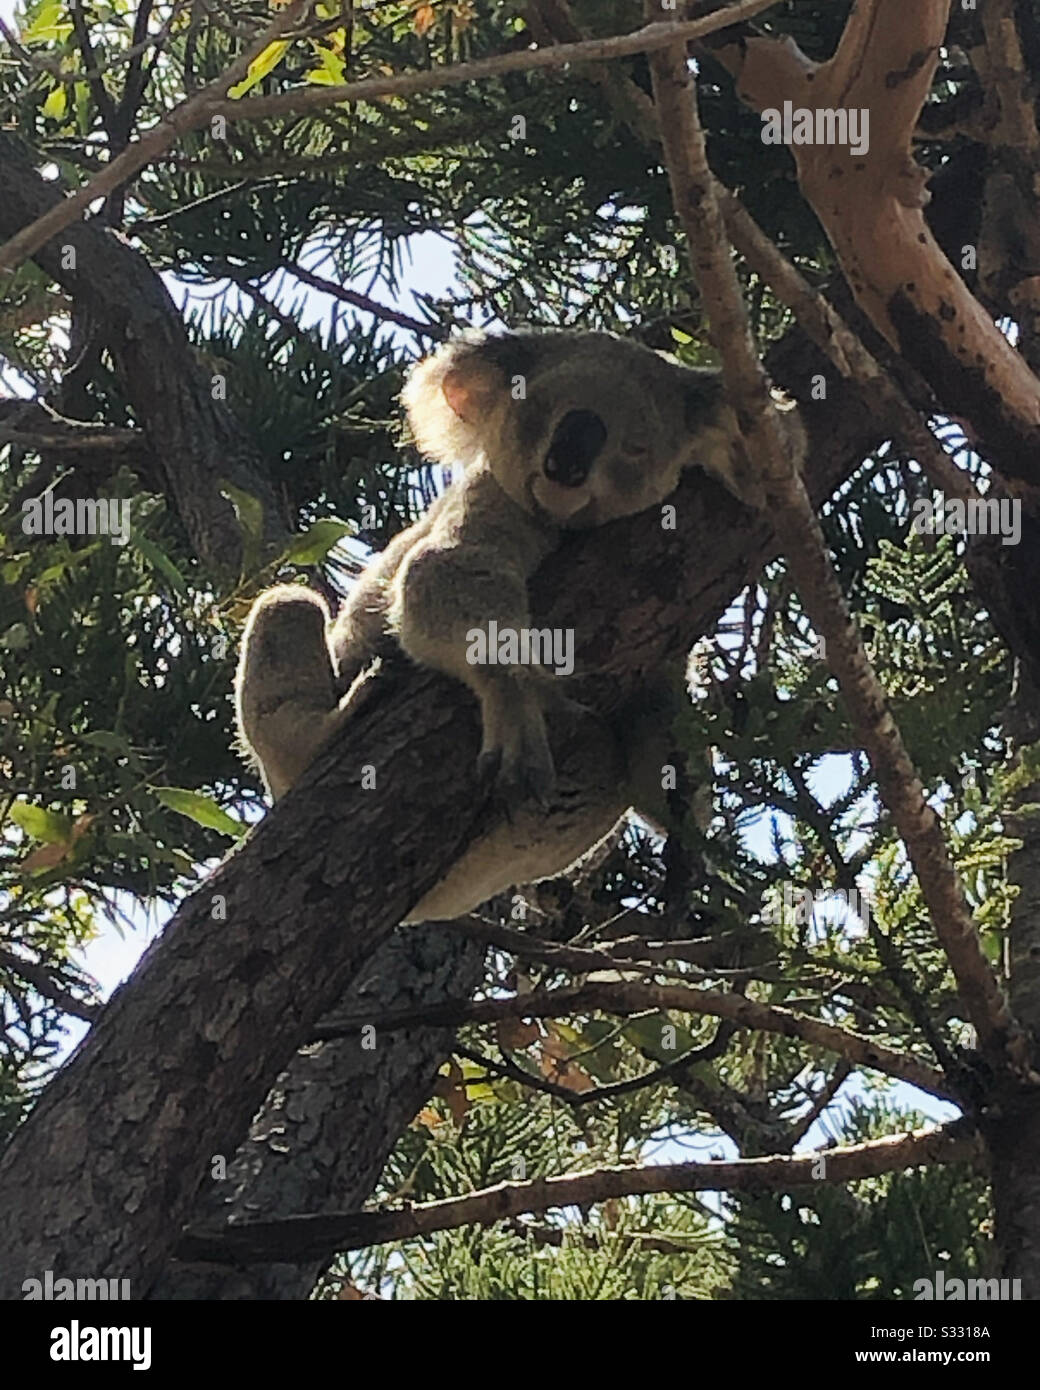 Un koala sauvage embrassant un arbre Banque D'Images